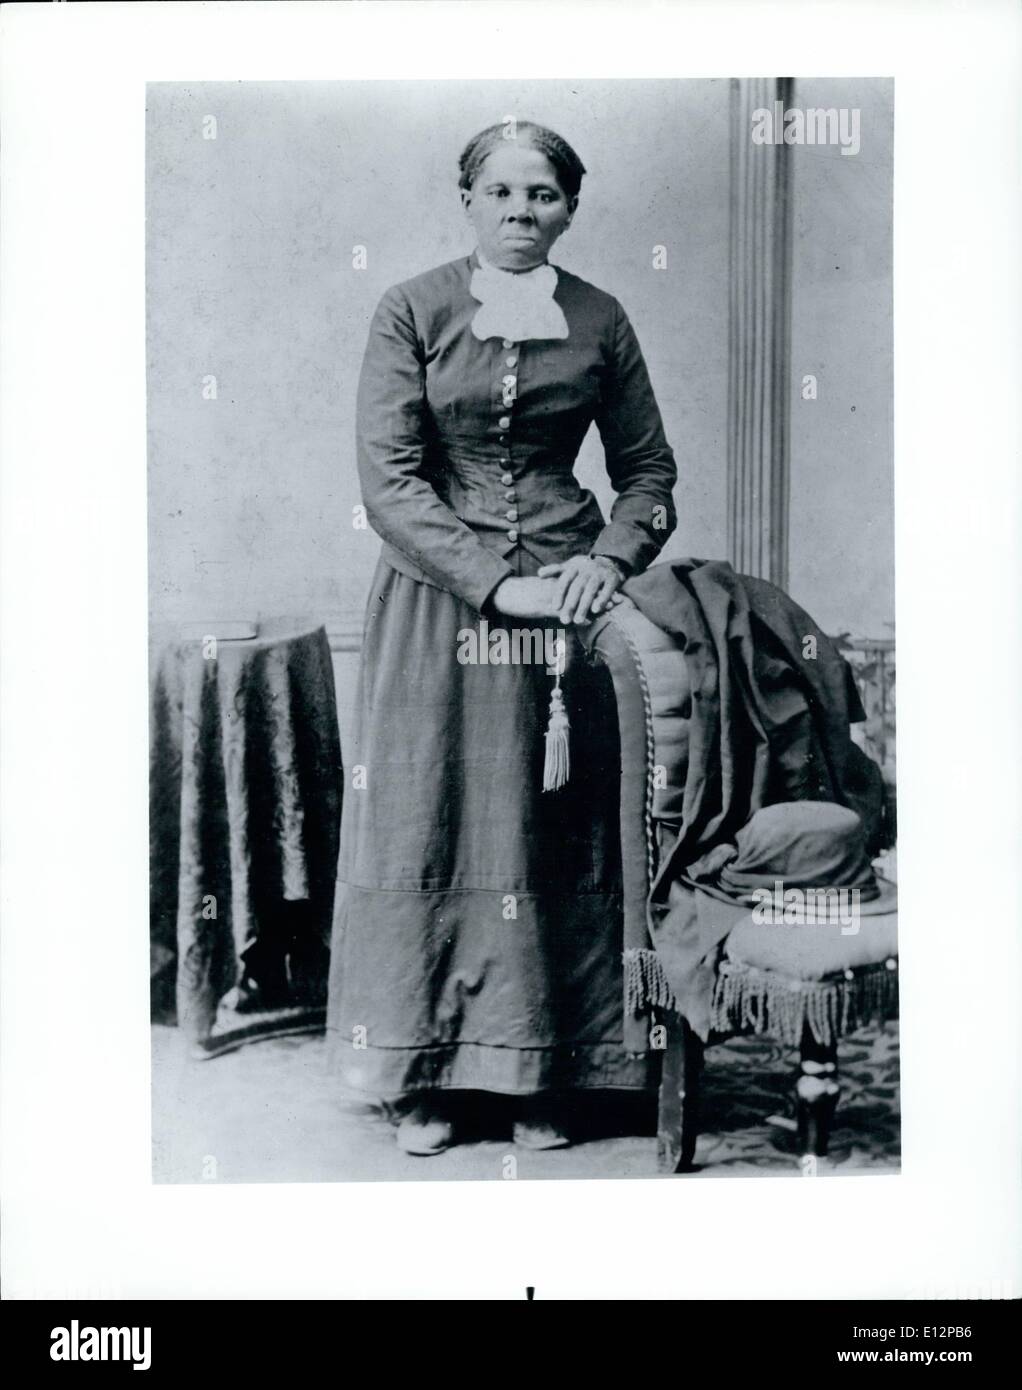 24 febbraio 2012 - l'etnia americana: La sua storia. 5 Slave di Resolute, Harriet Tubman, una mano di campo analfabeta, fuggì ma tornò spesso a guidare oltre 300 altri nord. Foto Stock